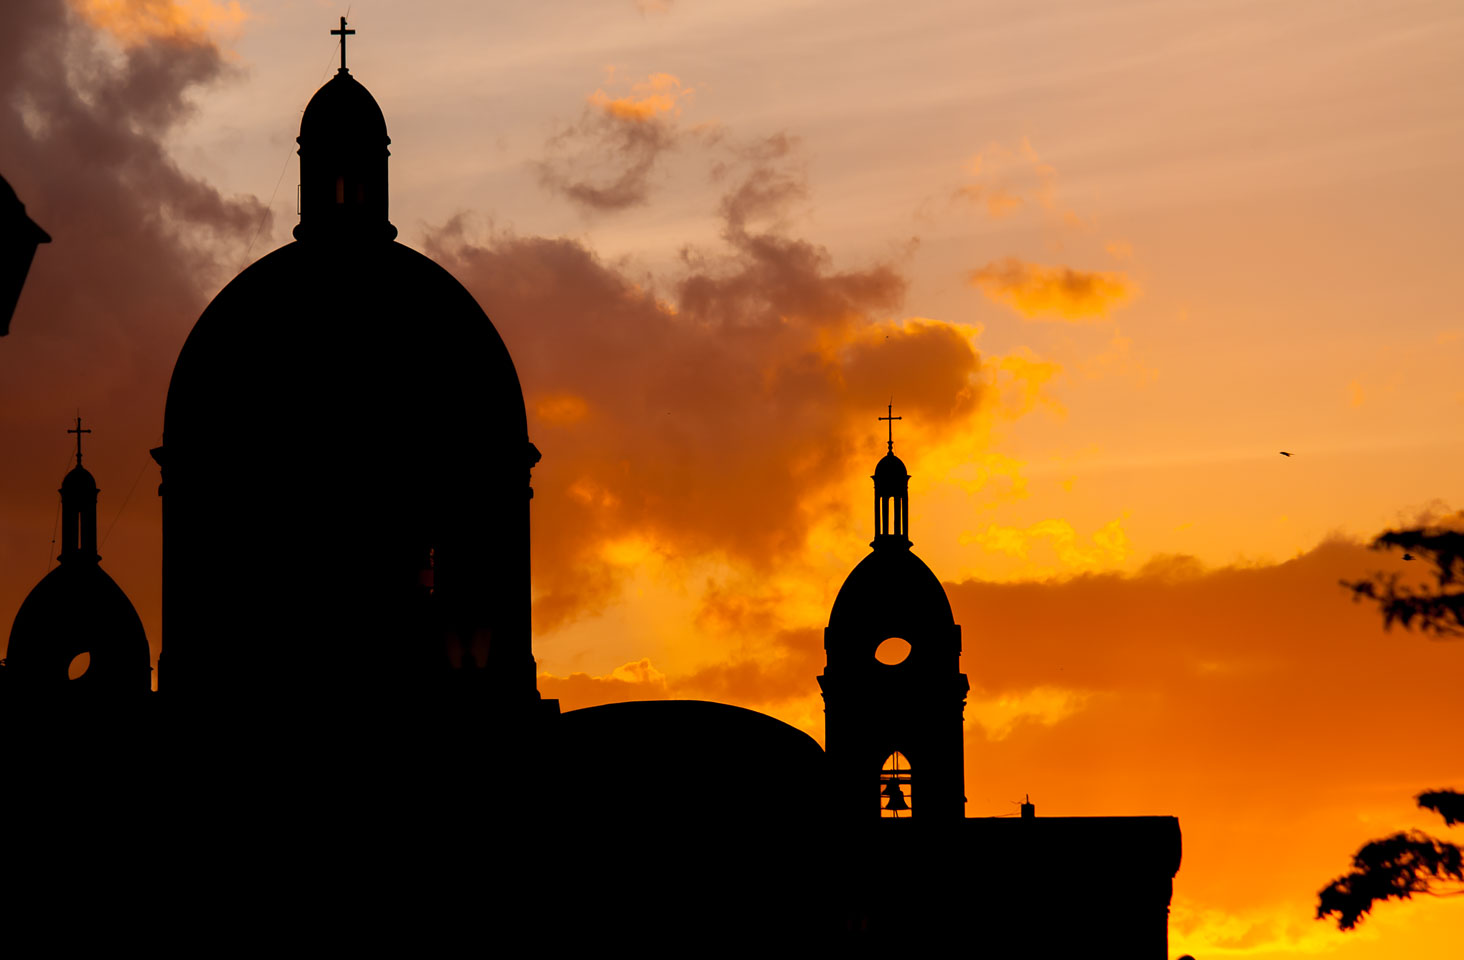 NI120175-Granada-The-Cathedral-at-sunset.jpg